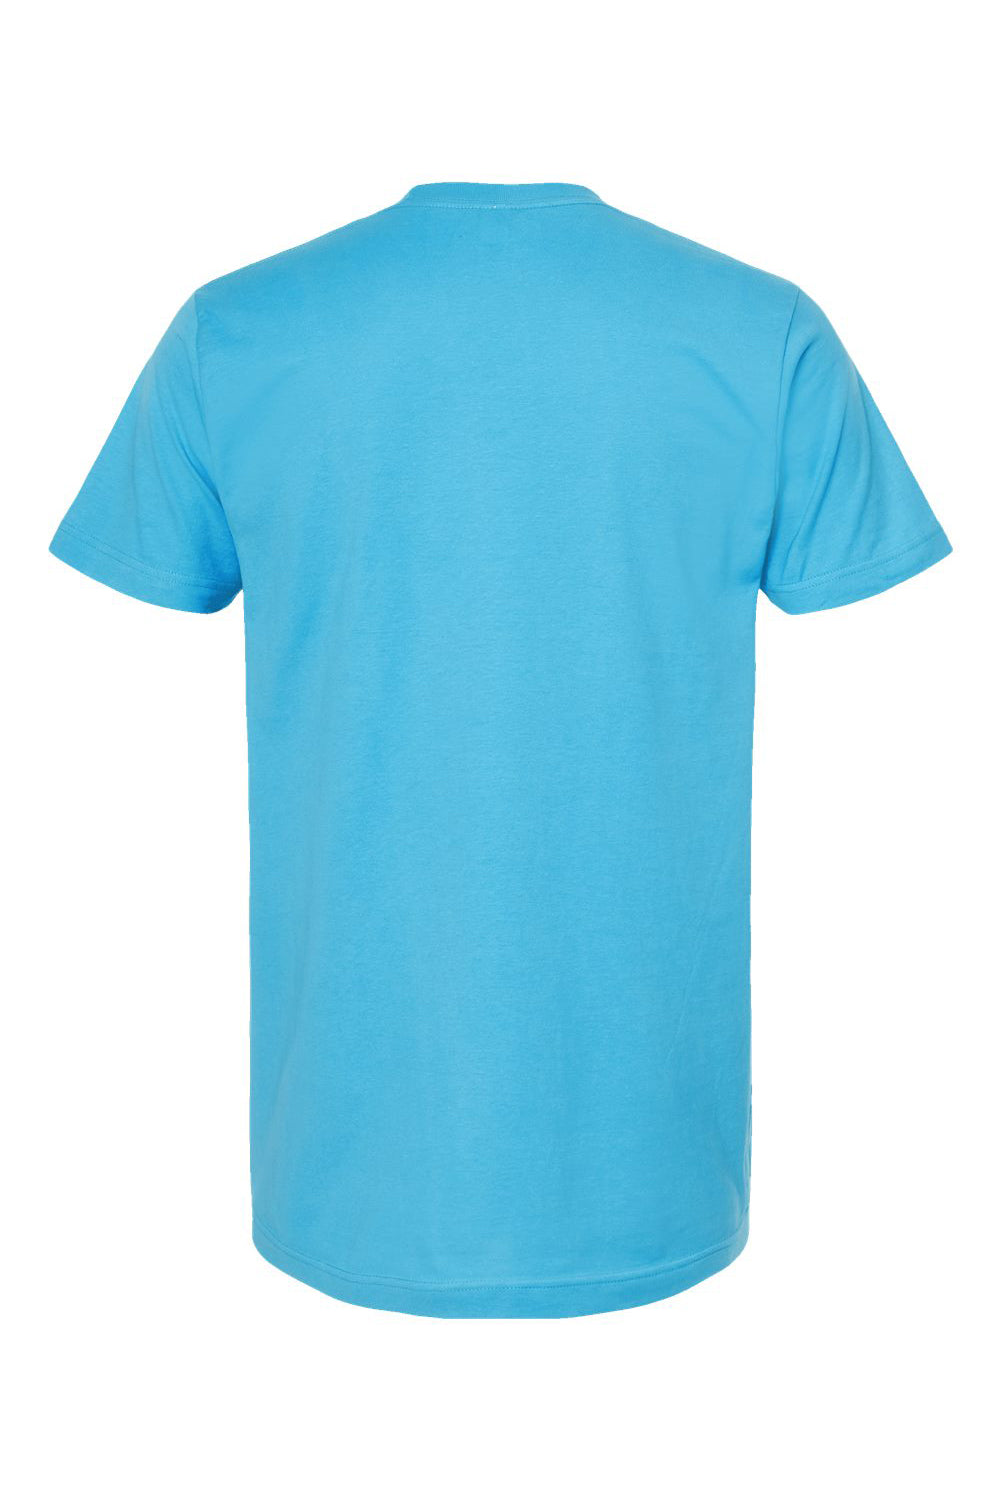 Tultex 202 Mens Fine Jersey Short Sleeve Crewneck T-Shirt Aqua Blue Flat Back